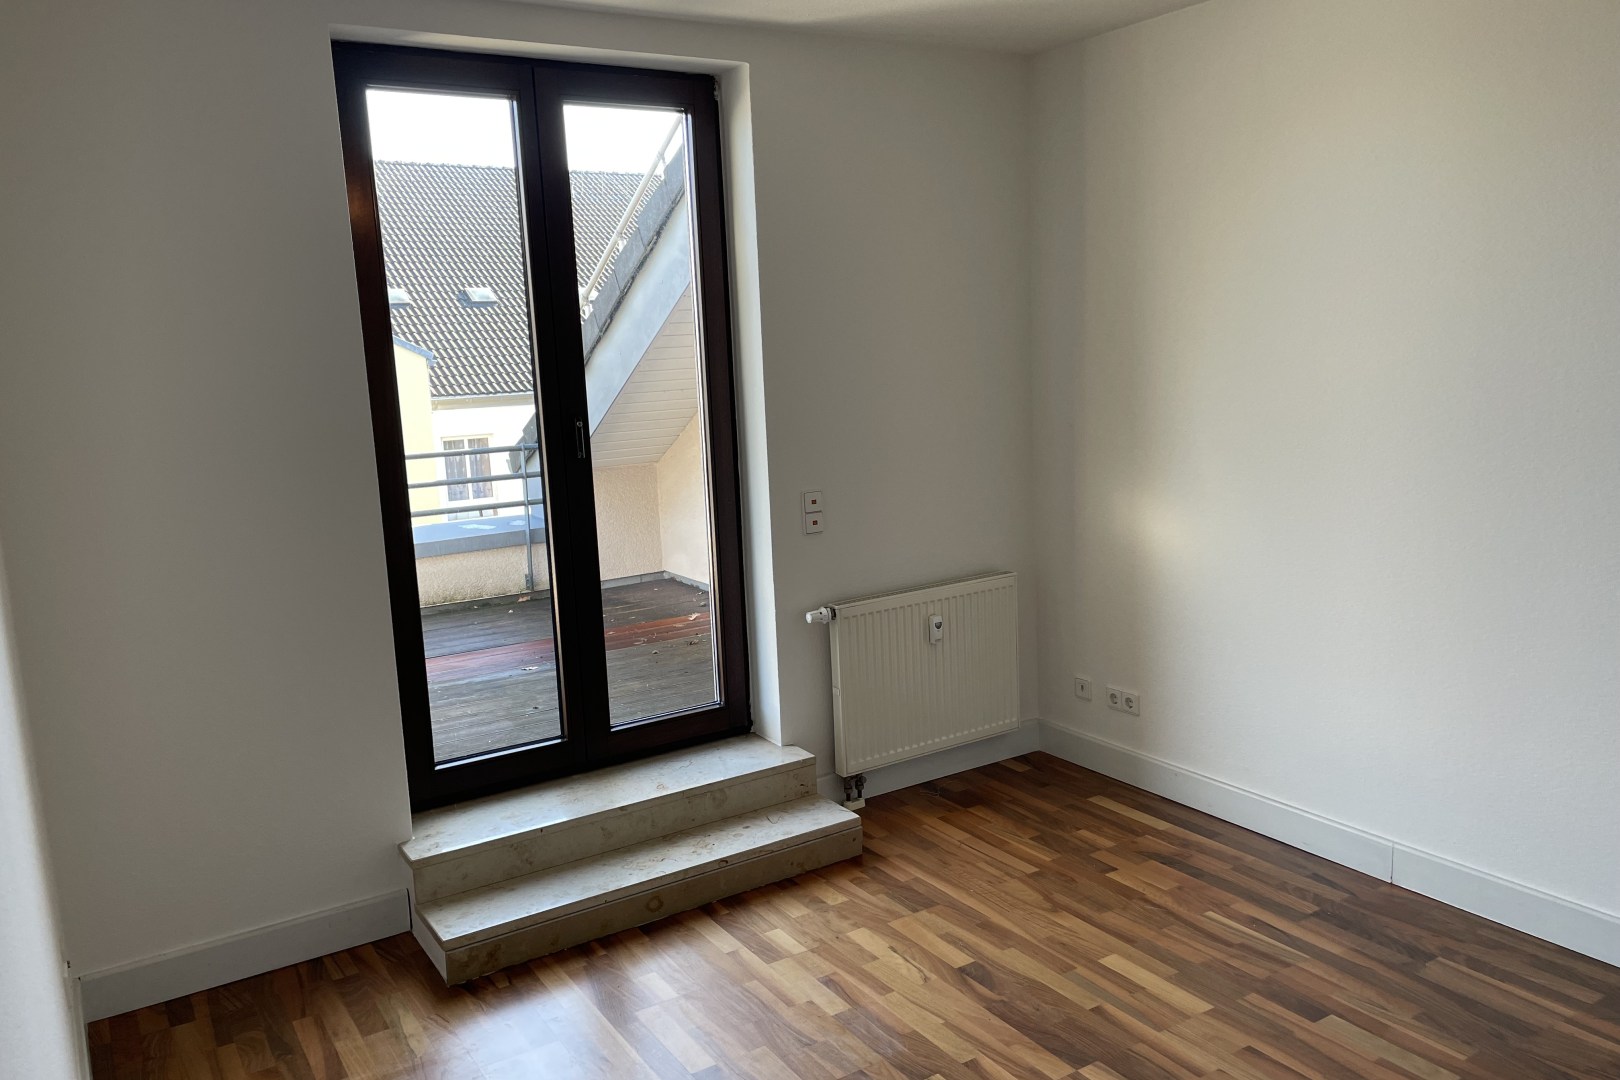 Immobilie Nr.0379 - 3-Zimmer-Wohnung Maisonette mit 2 Balkonen - Bild 6.jpg